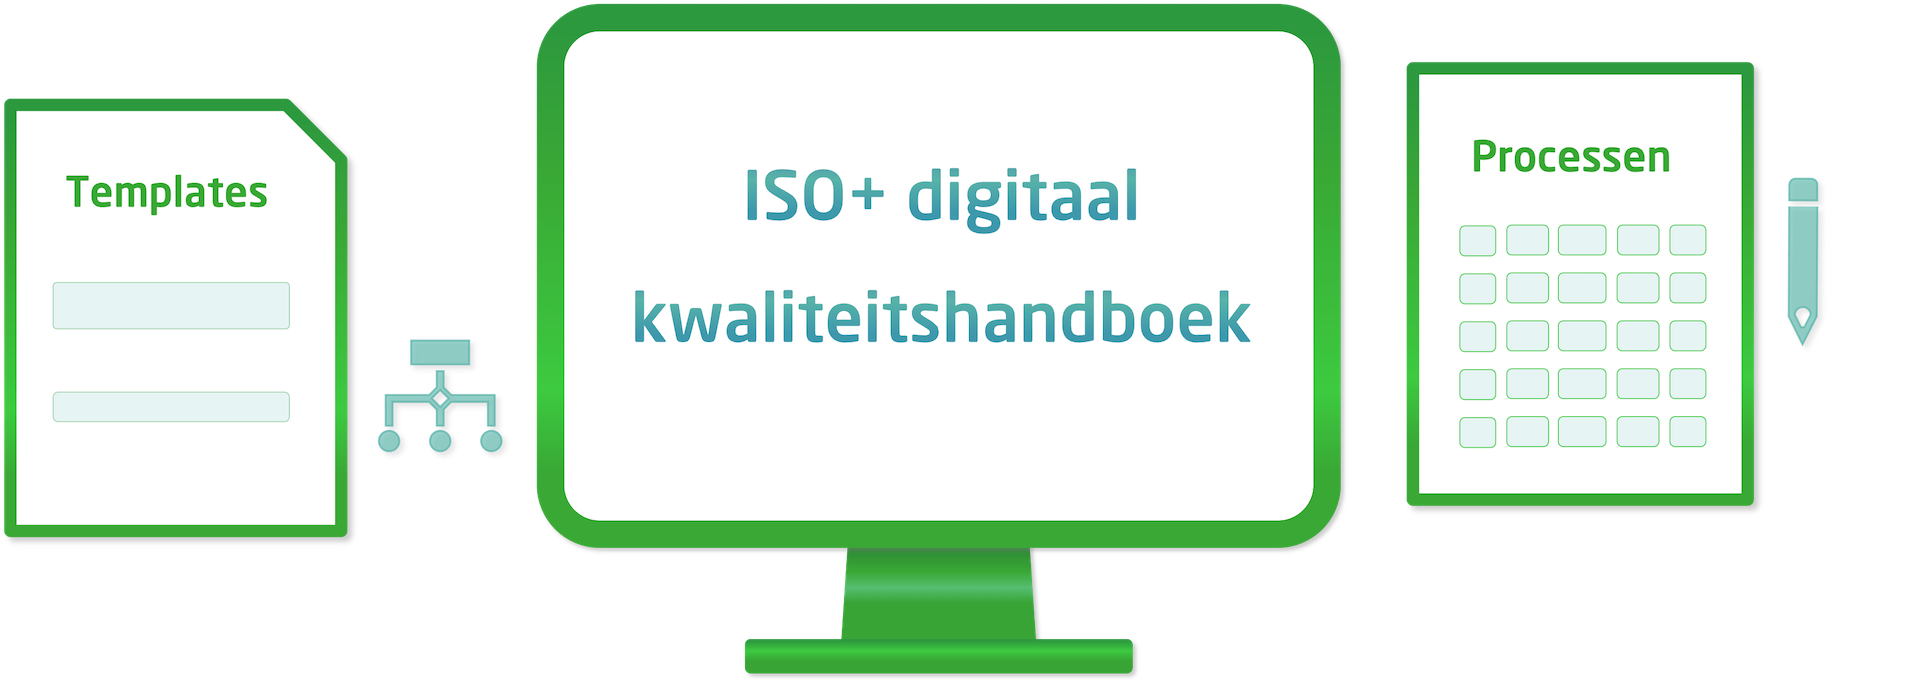 ISO 9001 kwaliteitshandboek